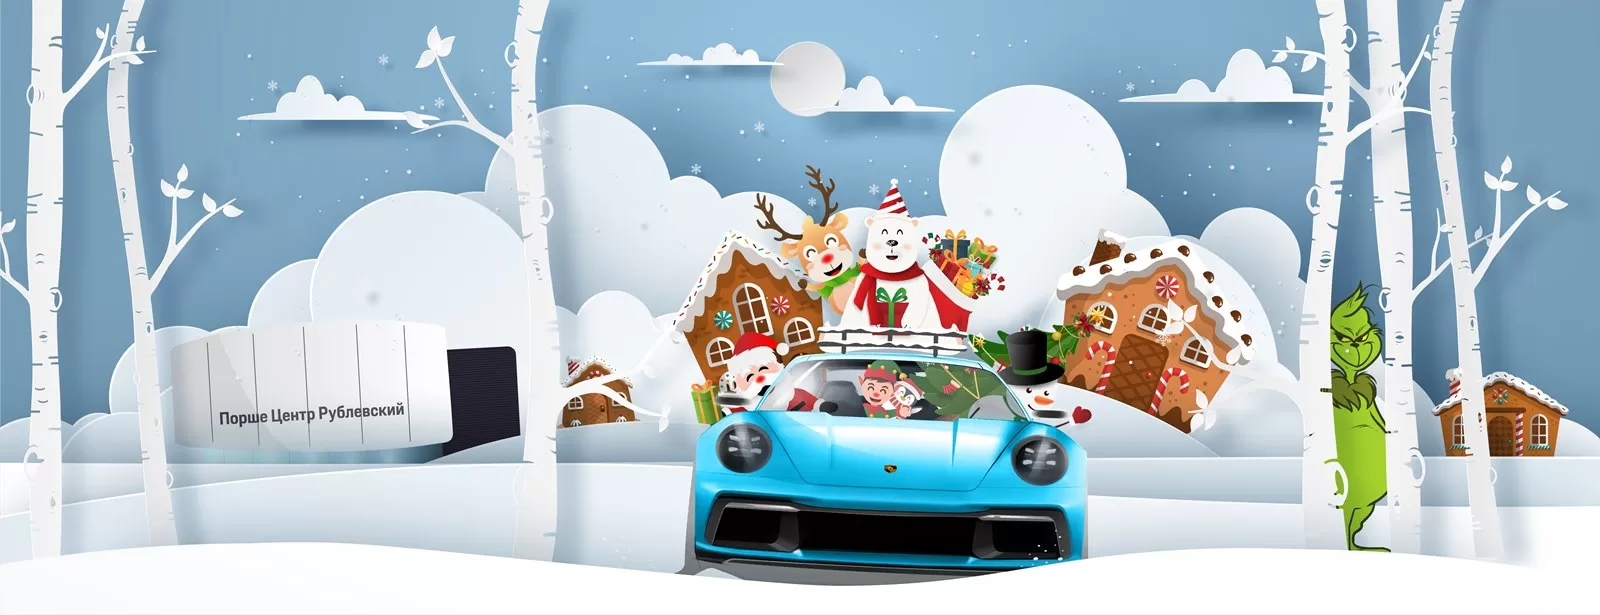 Новый год к нам мчится!... И его главные ценители — дети, наши будущие фанаты Porsche.